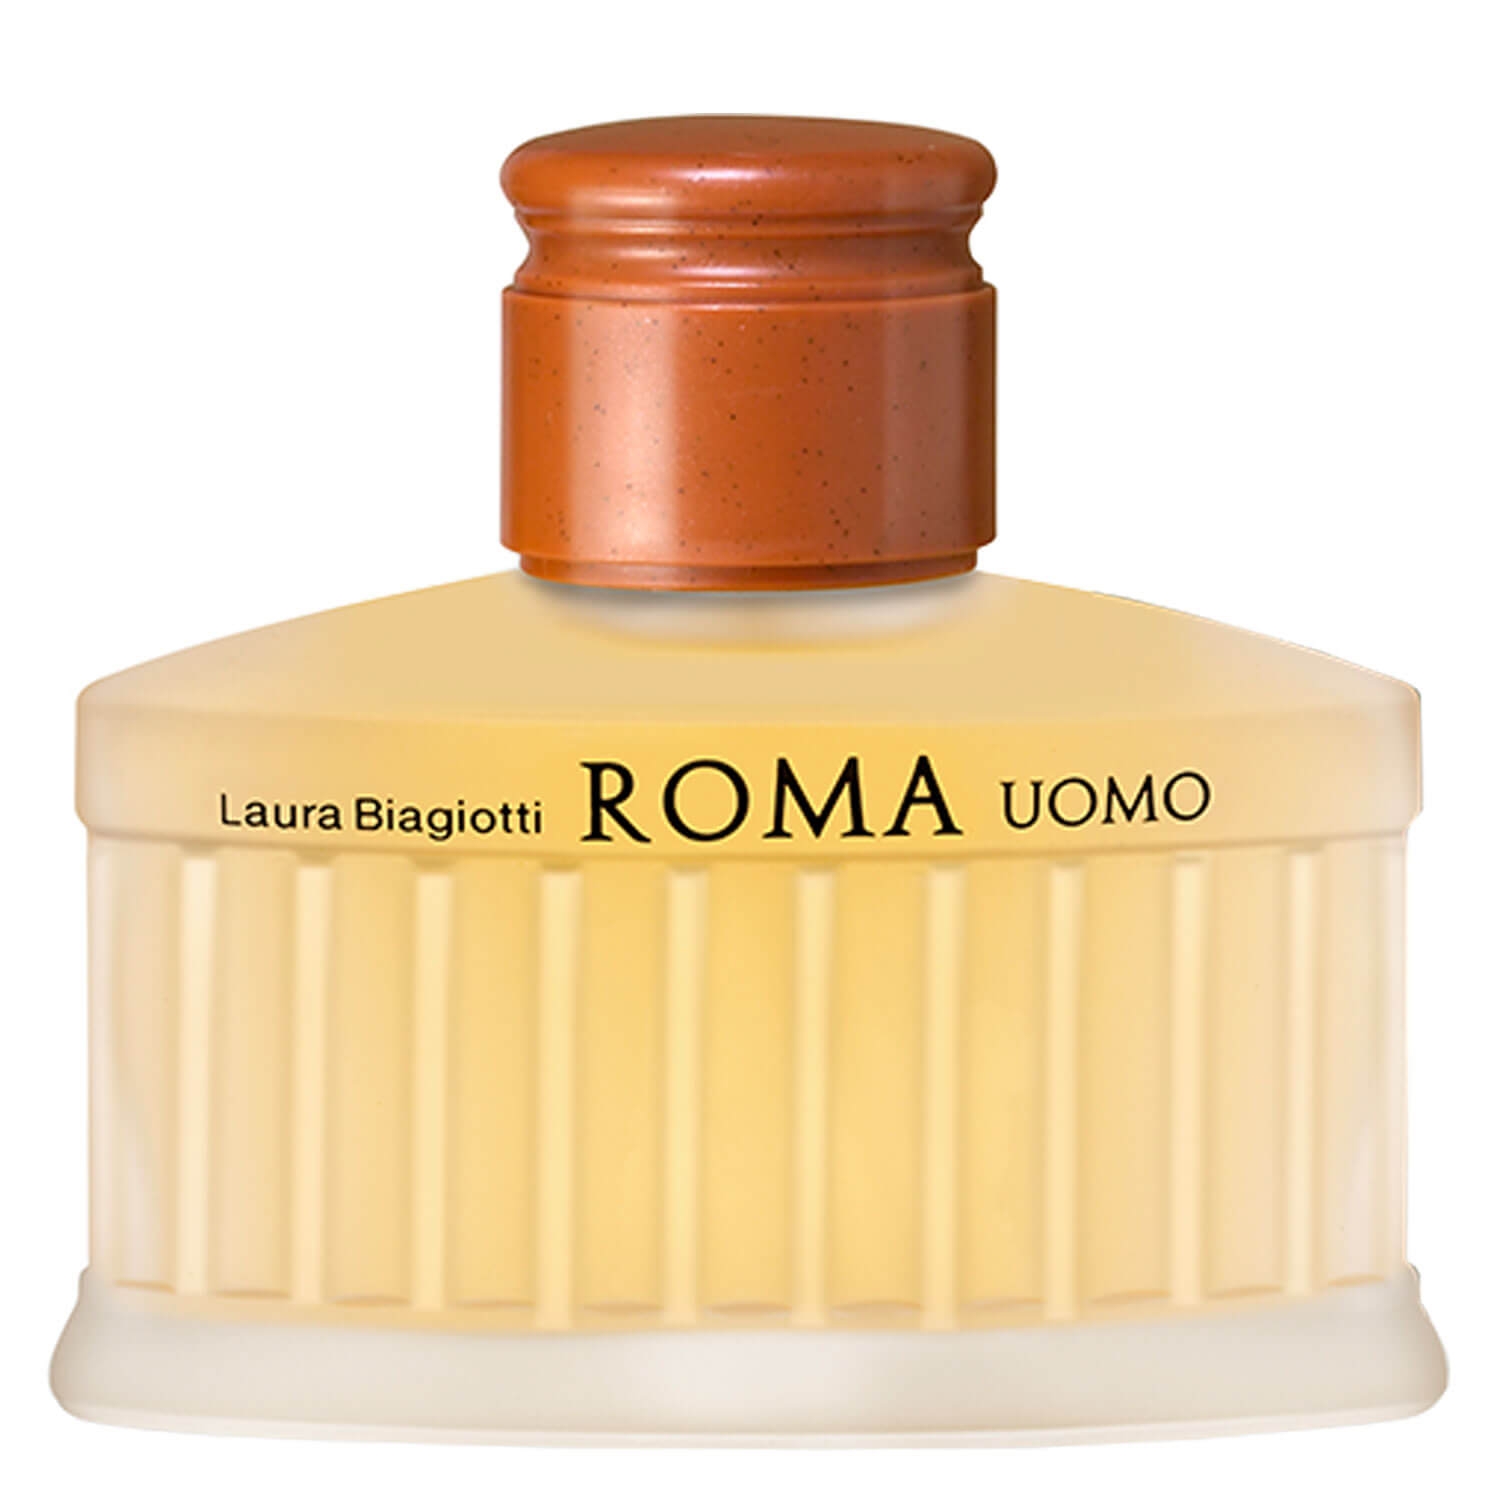 Produktbild von Roma - Uomo After Shave Lotion